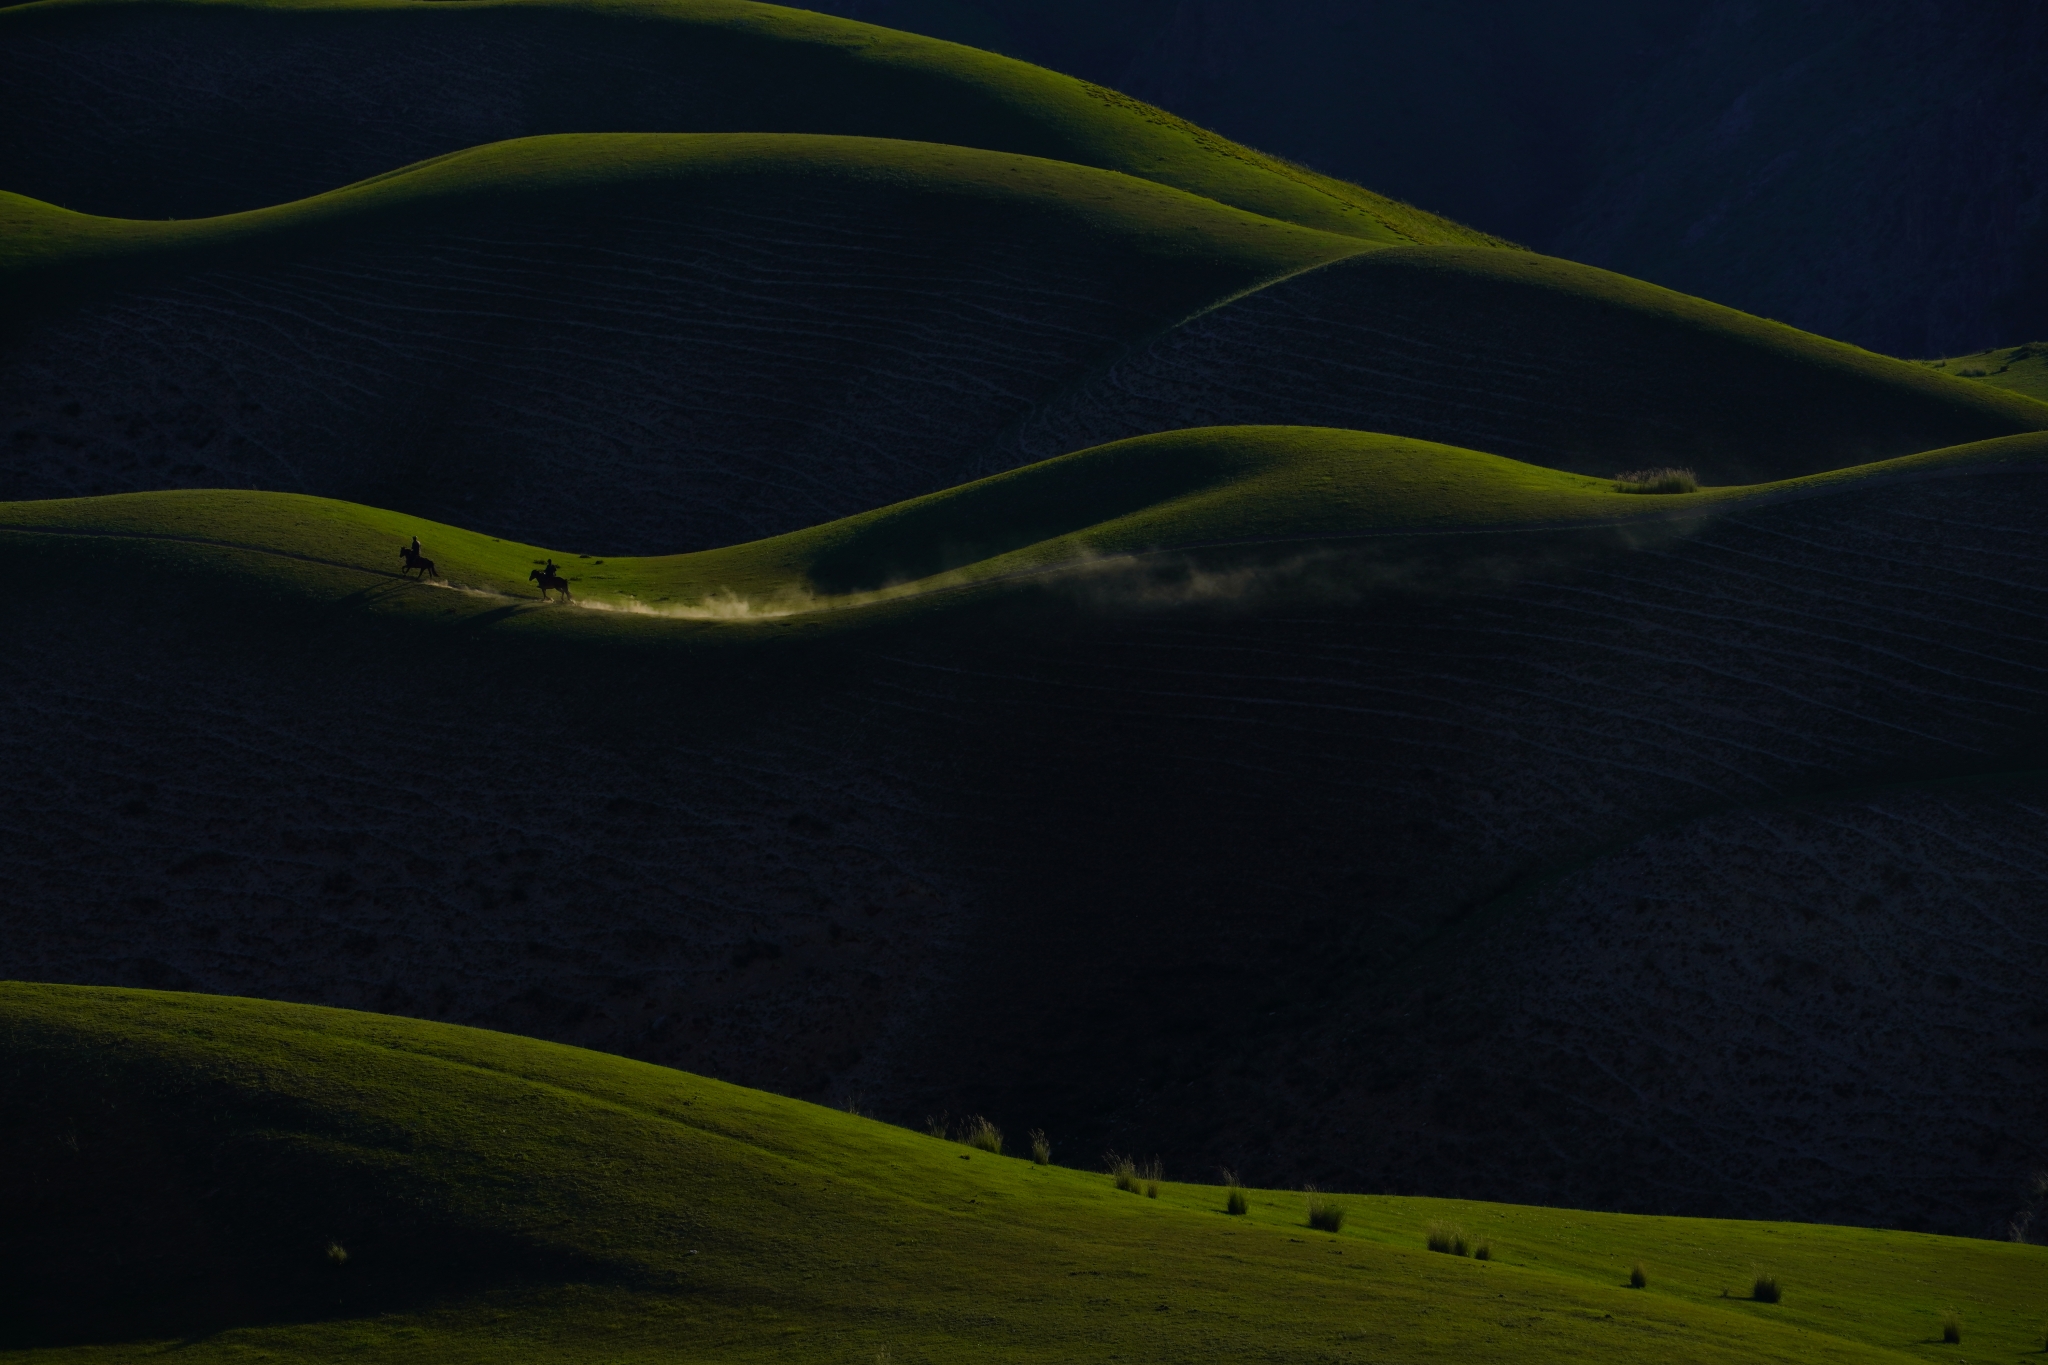 Horses running across dark green grassy hills